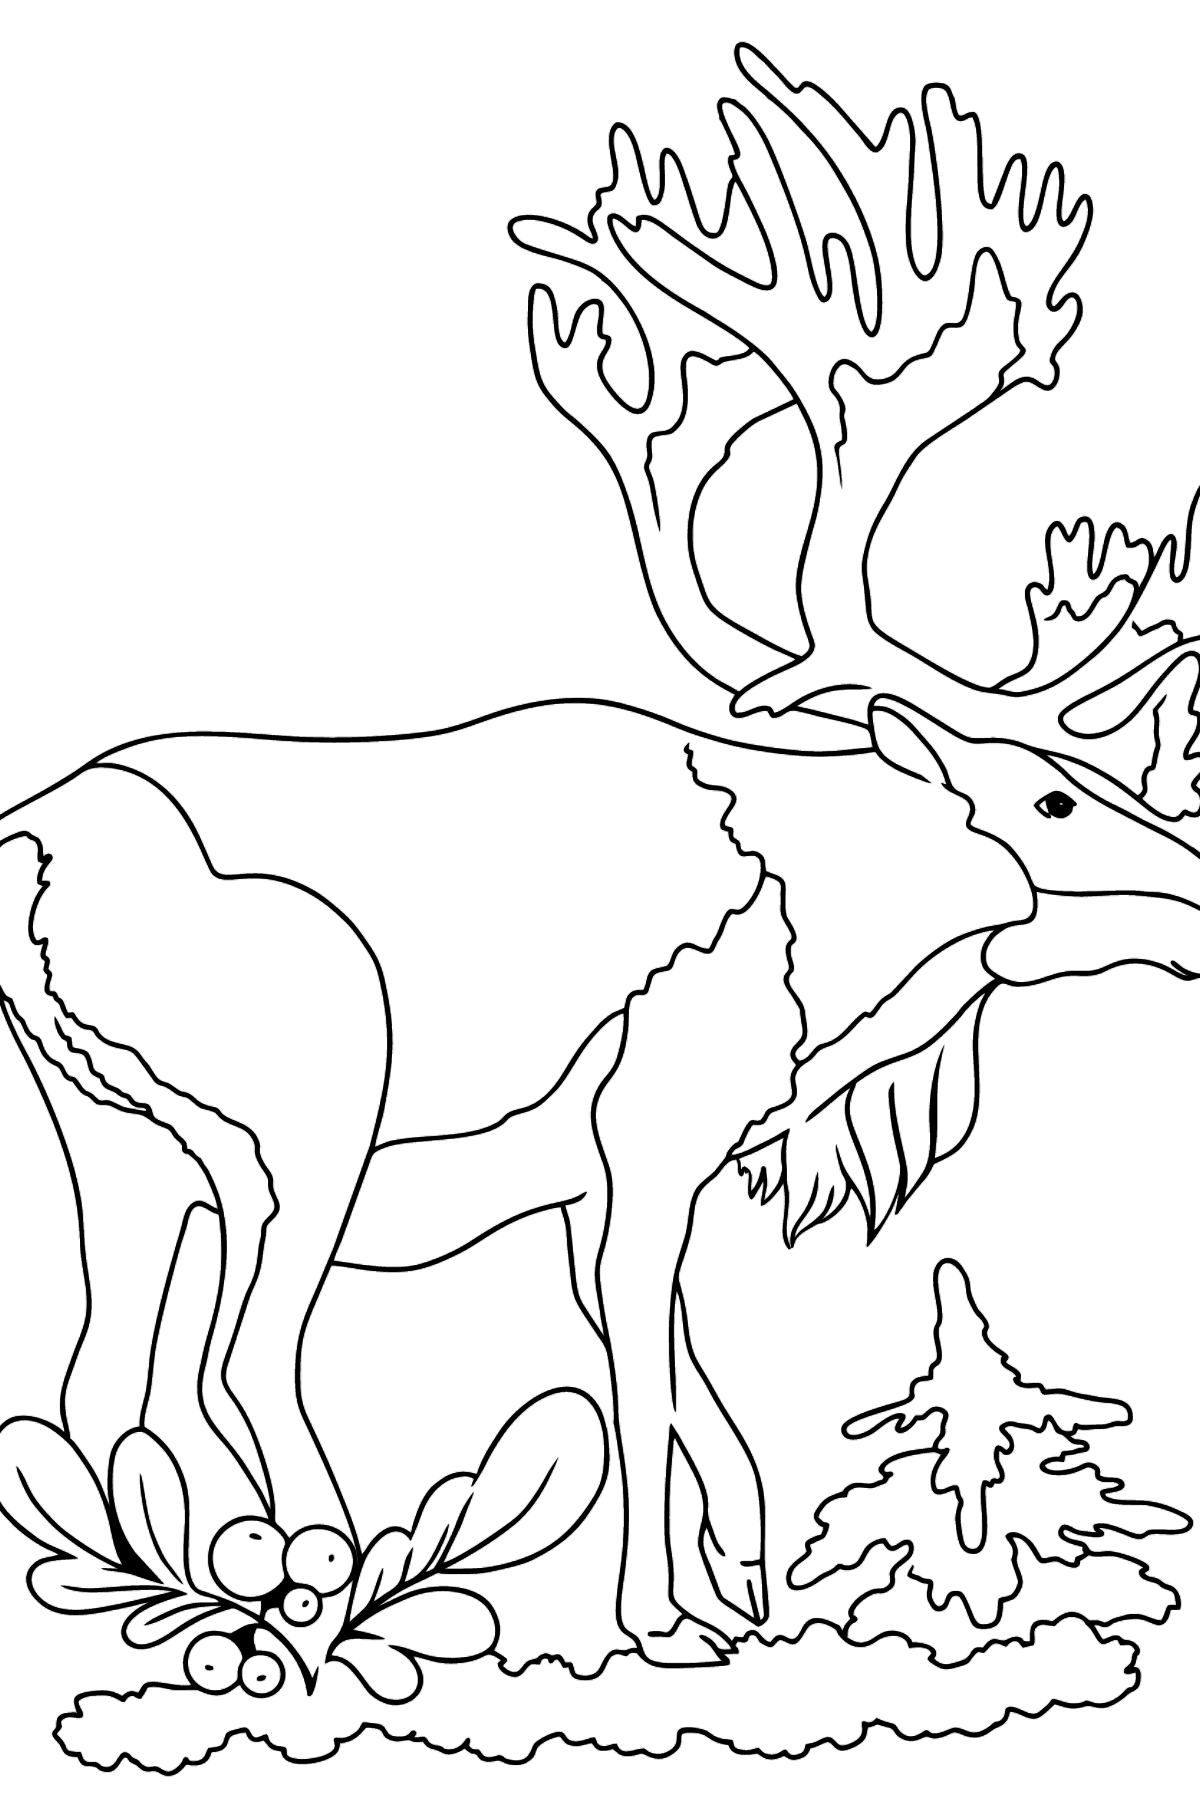 Tegning til farvning hjorte til børn - Tegninger til farvelægning for børn